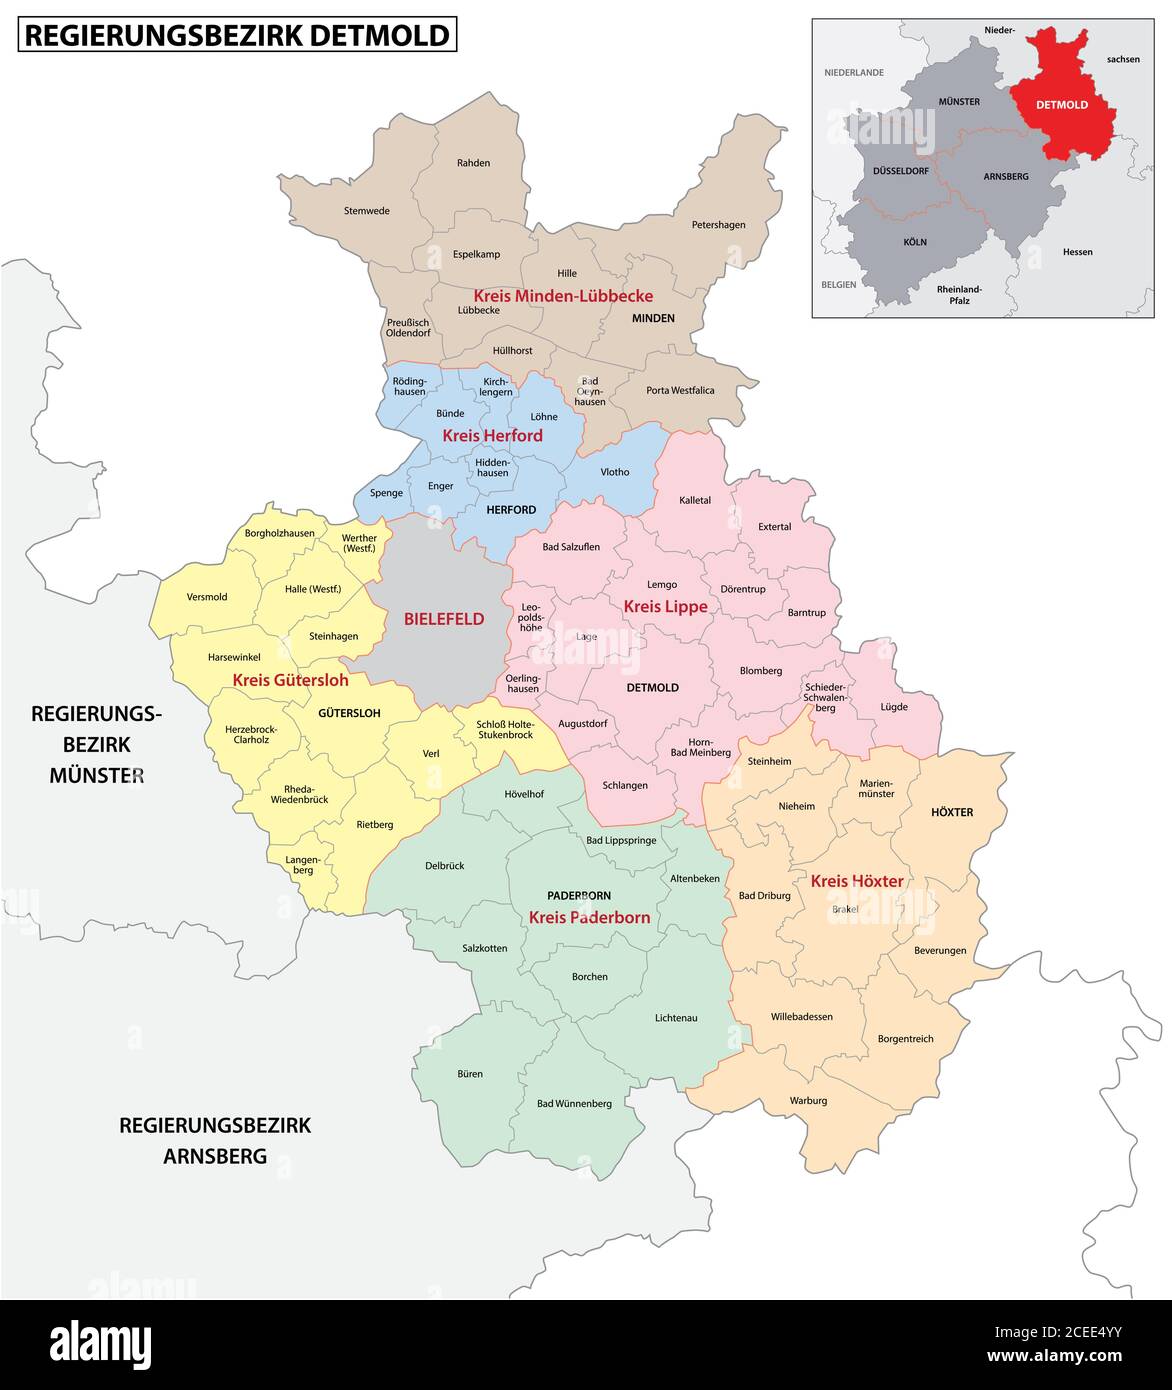 Carte vectorielle administrative de la région de Detmold en allemand, Rhénanie-du-Nord-Westphalie, Allemagne Illustration de Vecteur